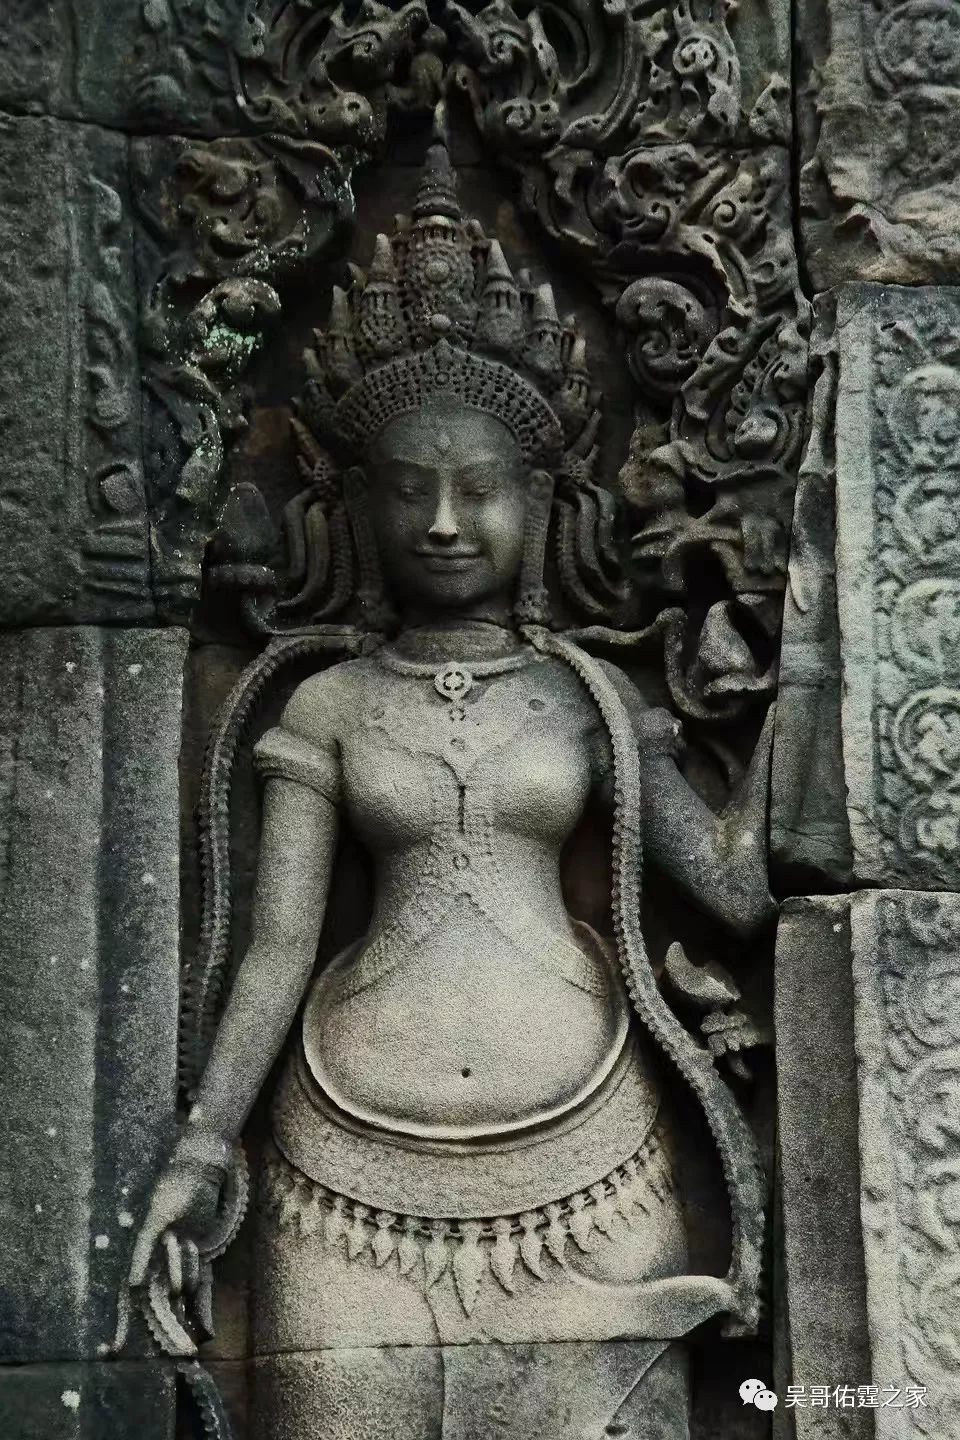 柬埔寨吴哥窟寺庙中常出现的图形,符号和人物雕刻